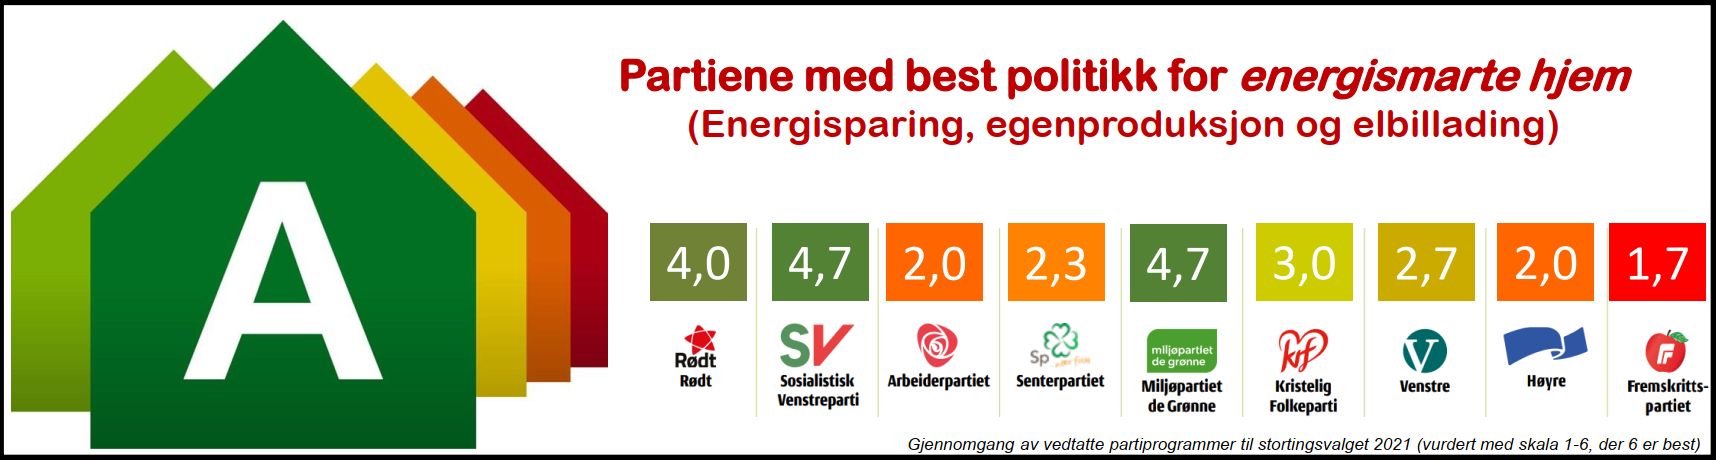 Partikaaringen2021_Energismarte_hjem100.jpg